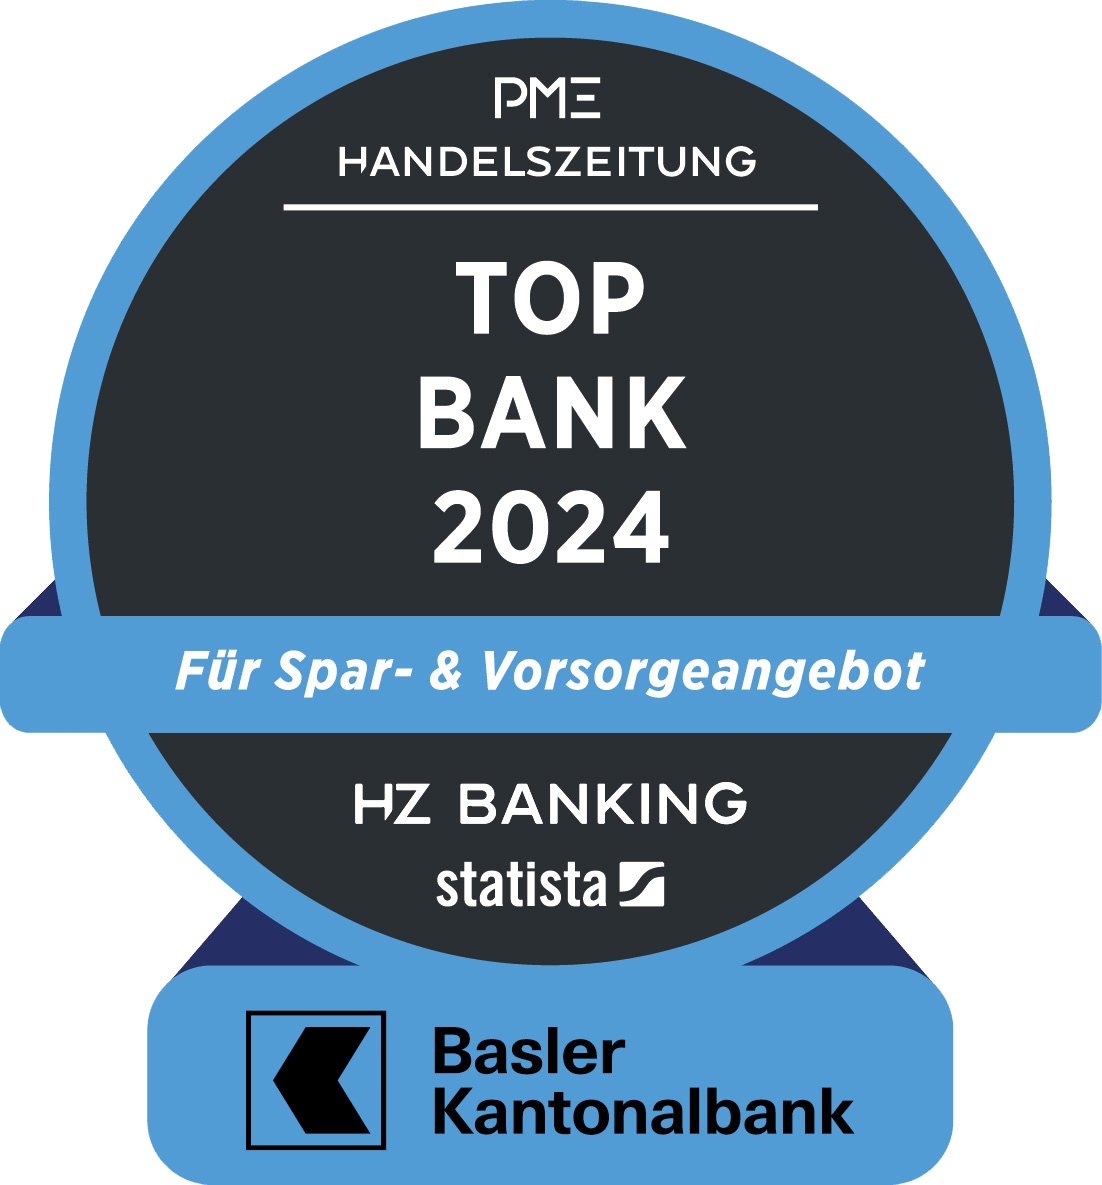 Auszeichnung Top Bank 2024 - Für Spar- & Vorsorgeangebot